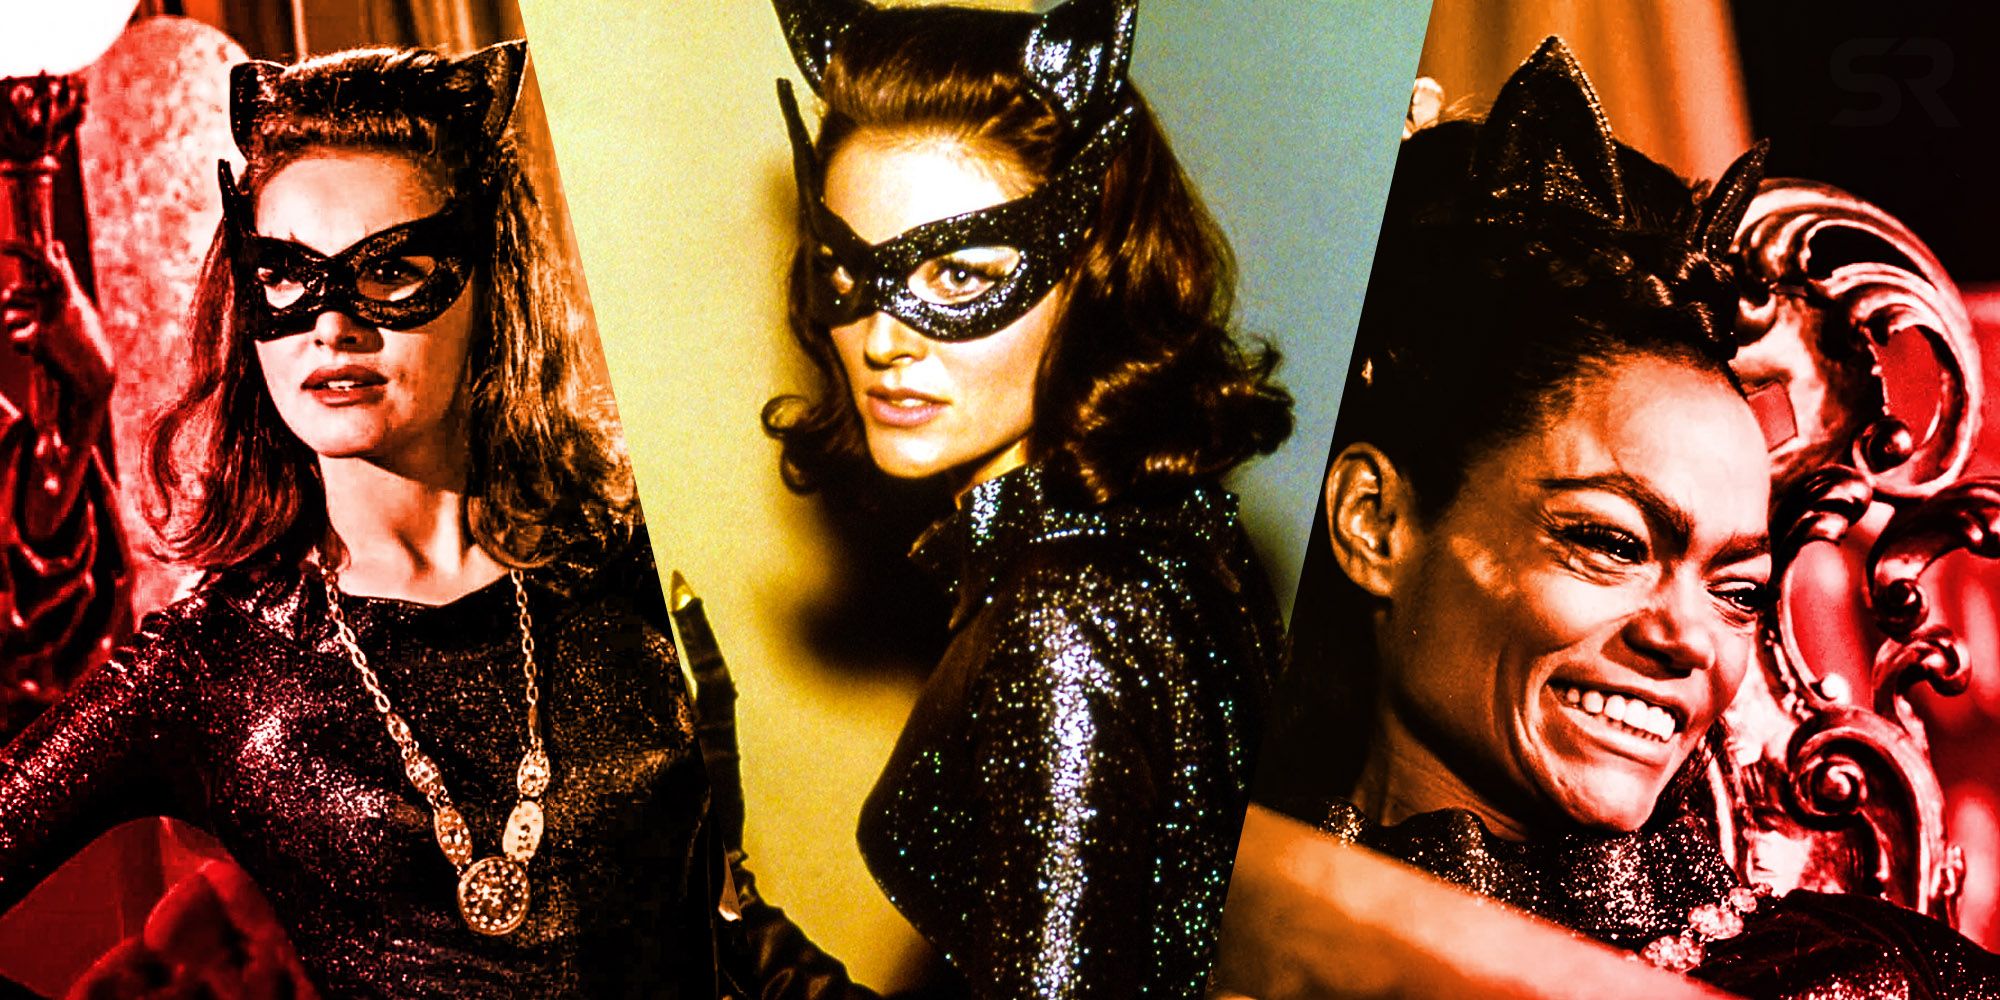 Eartha kitt julie Newmar Lee Meriwether Catwoman 60s batman tv show